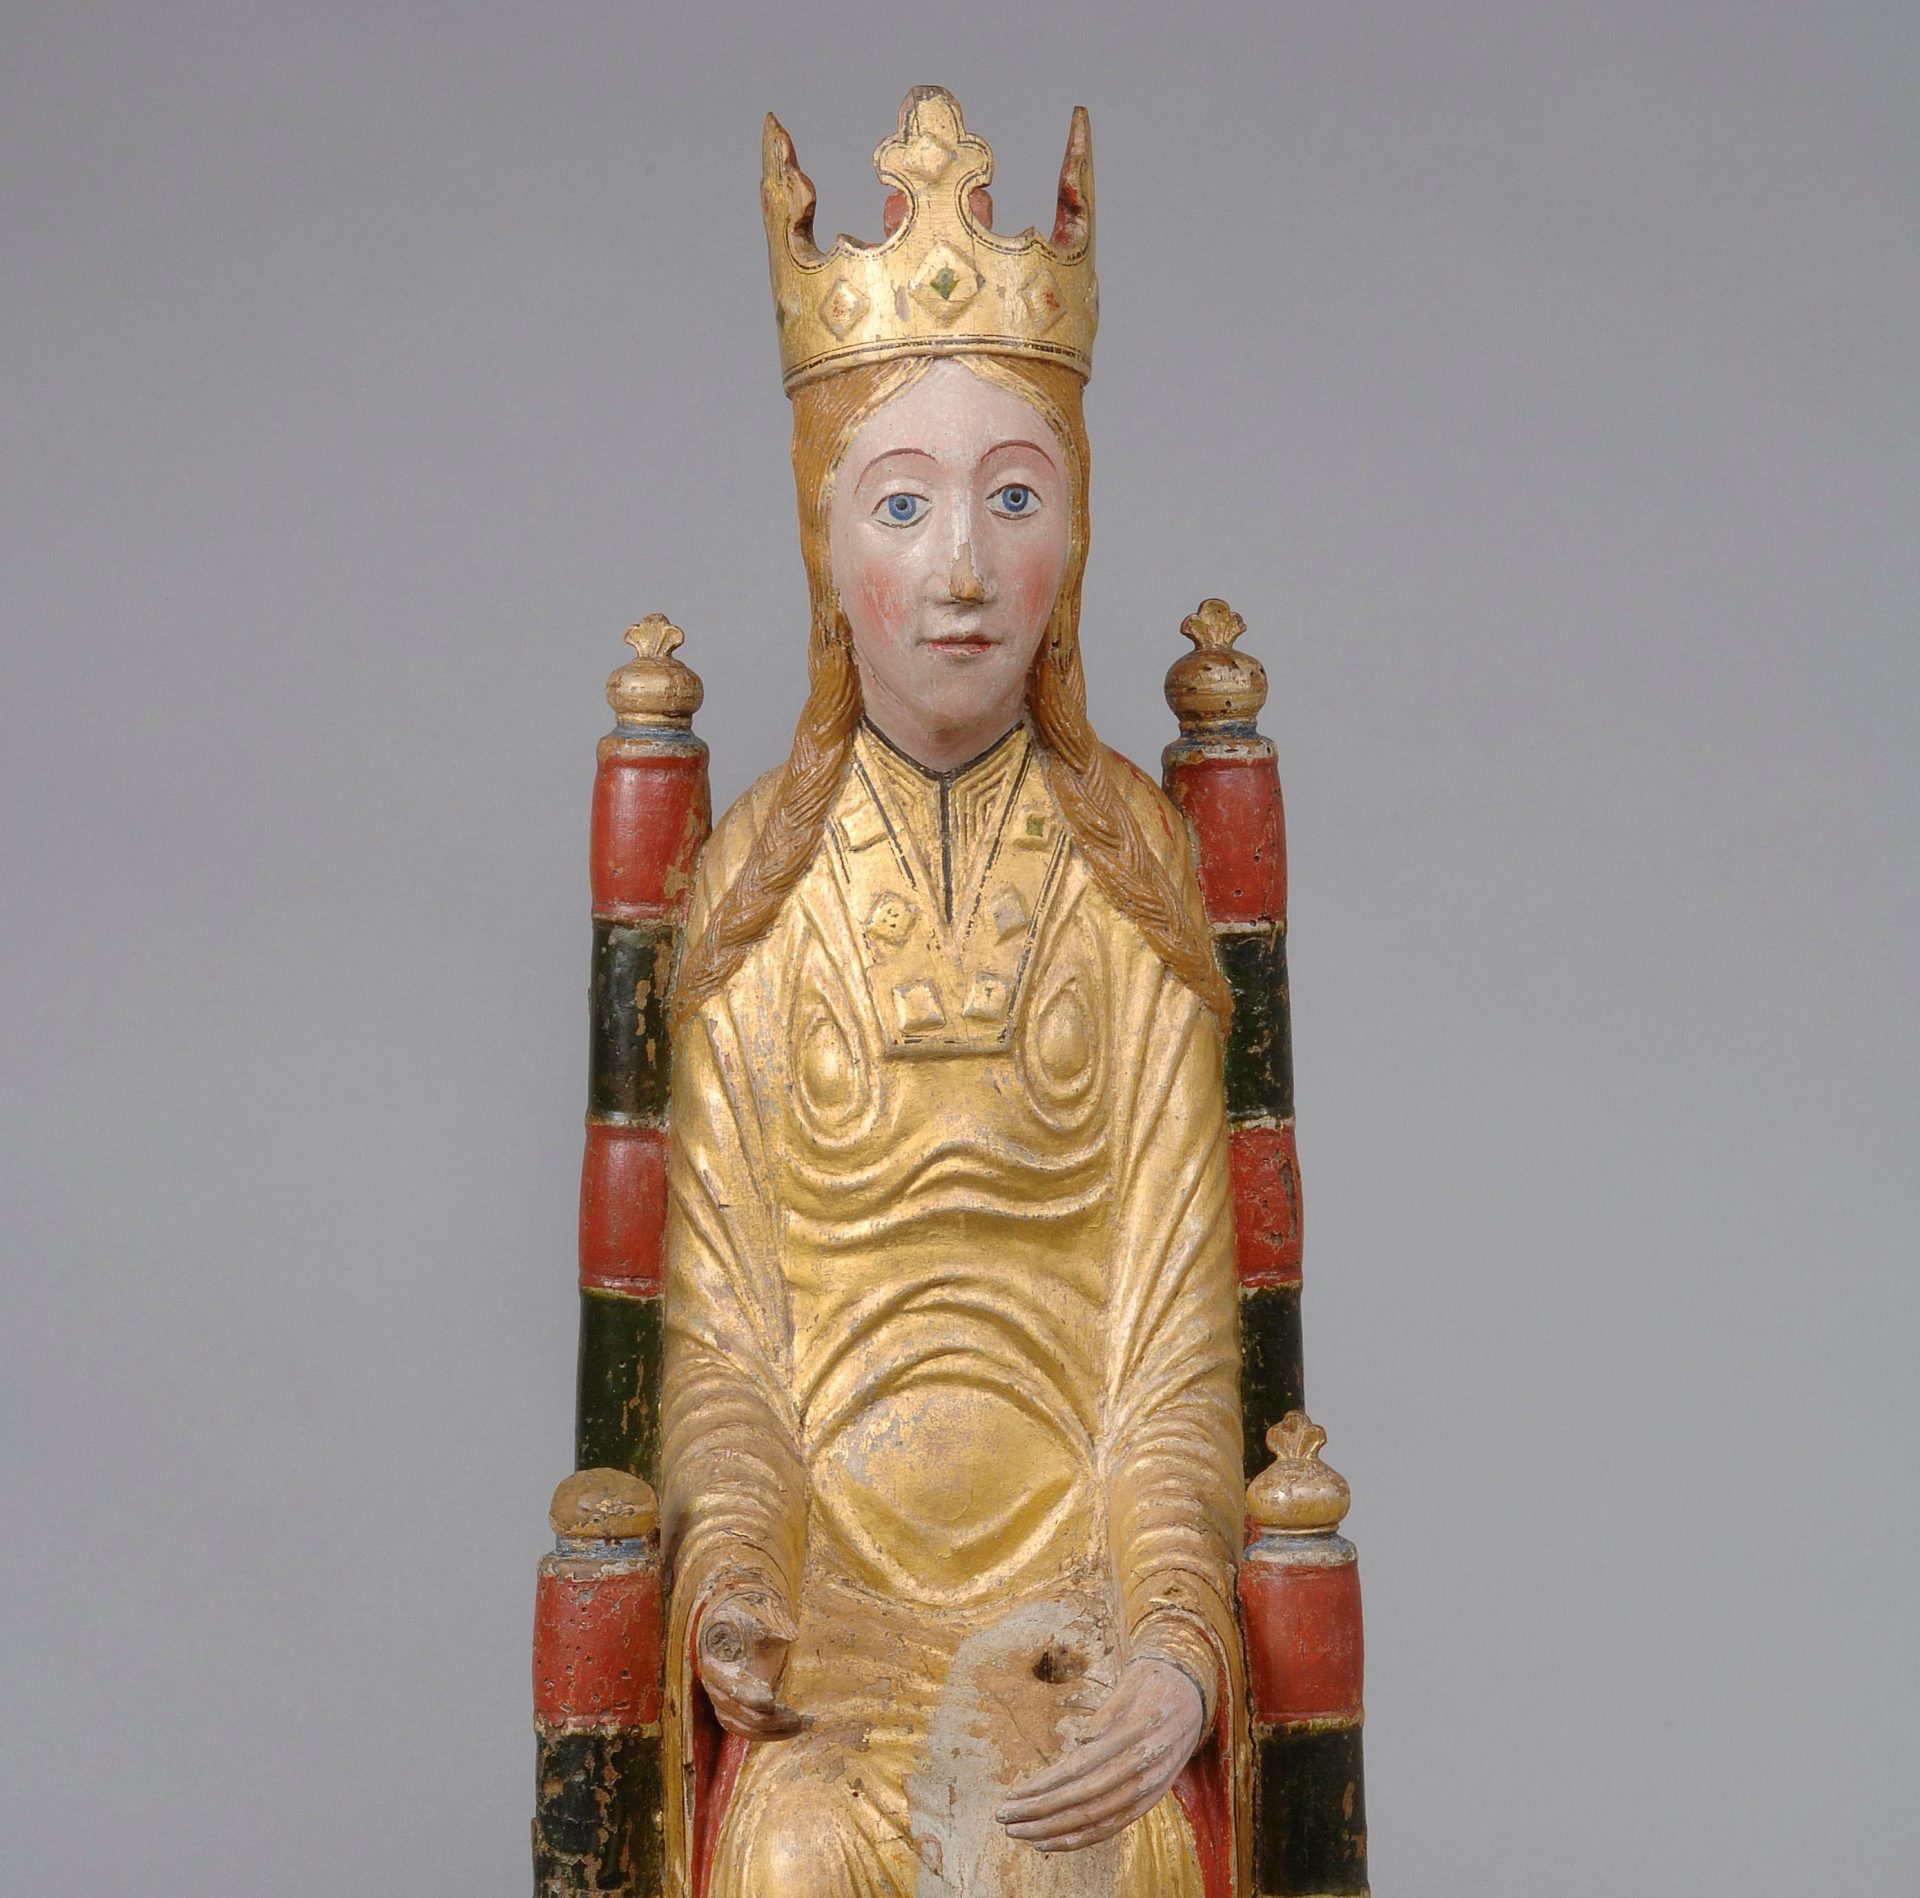 Foto av en träskulptur som föreställer en madonna. Skulpturen är målad i guld, rött och svart